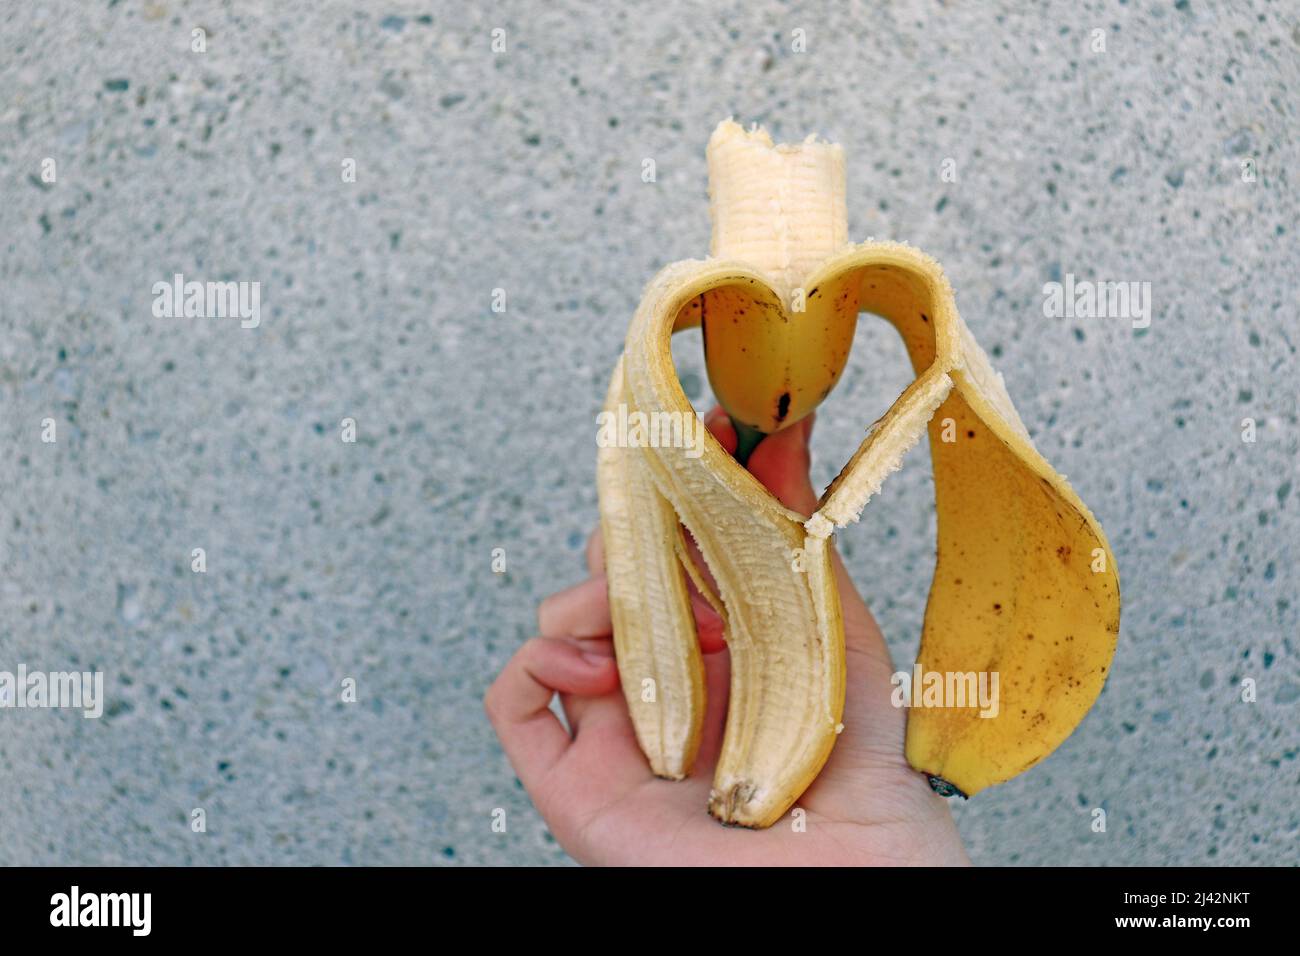 Geschälte Banane in Form eines Herzens, die die Liebe zur Eat Banane darstellt. Gesunde Ernährung, essen Banane. Herzförmige geschälte Banane Stockfoto